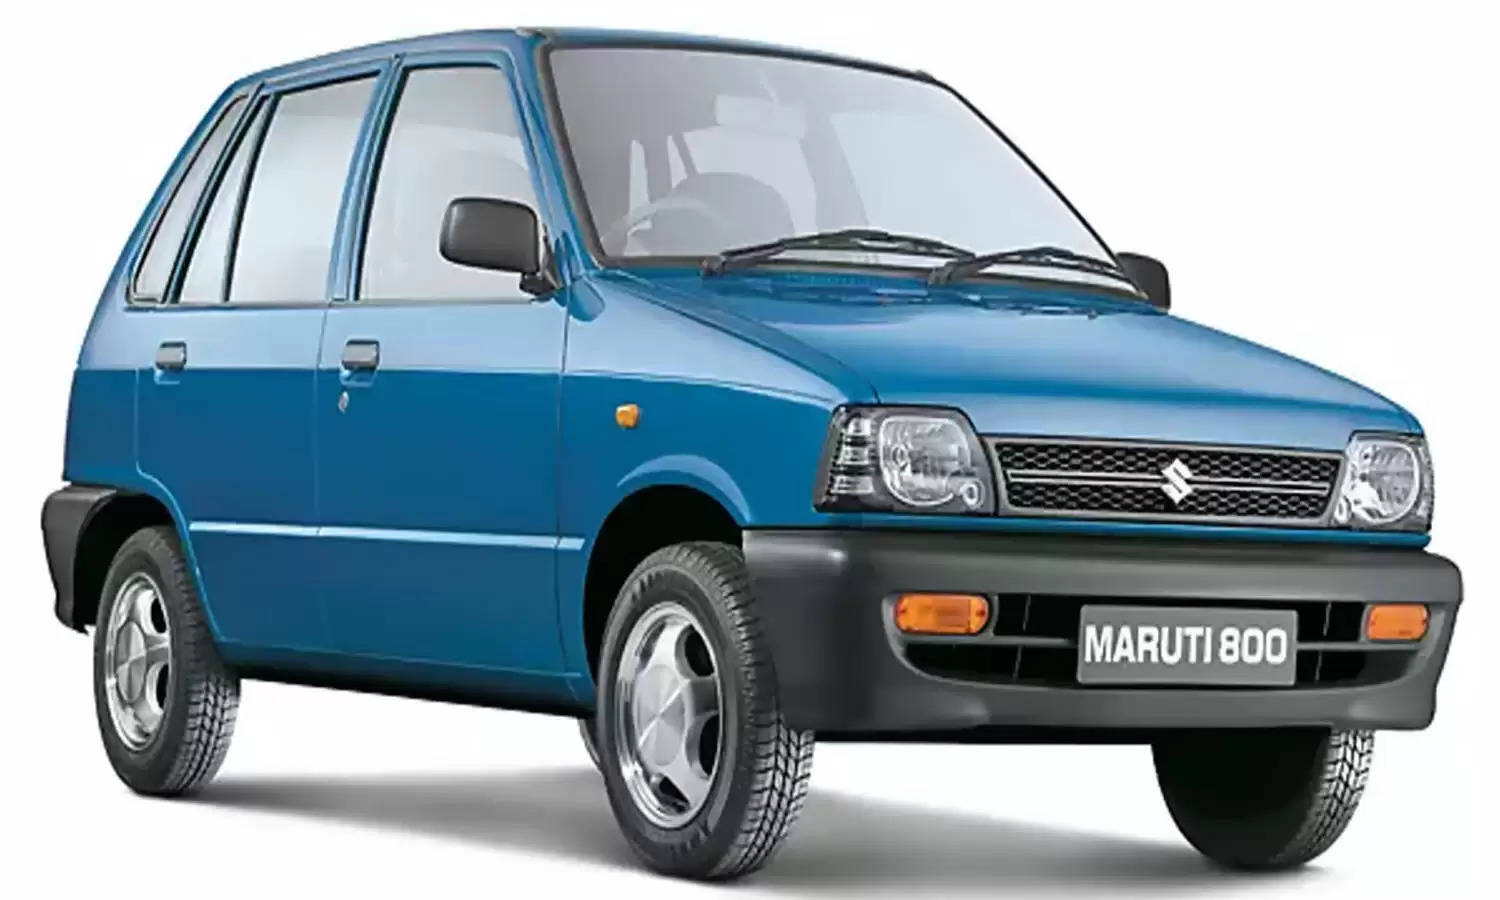 यहां सिर्फ 19 हजार की कीमत में बेची जा रही है शानदार Maruti 800, जानिए इस ऑफर और कार की डिटेल